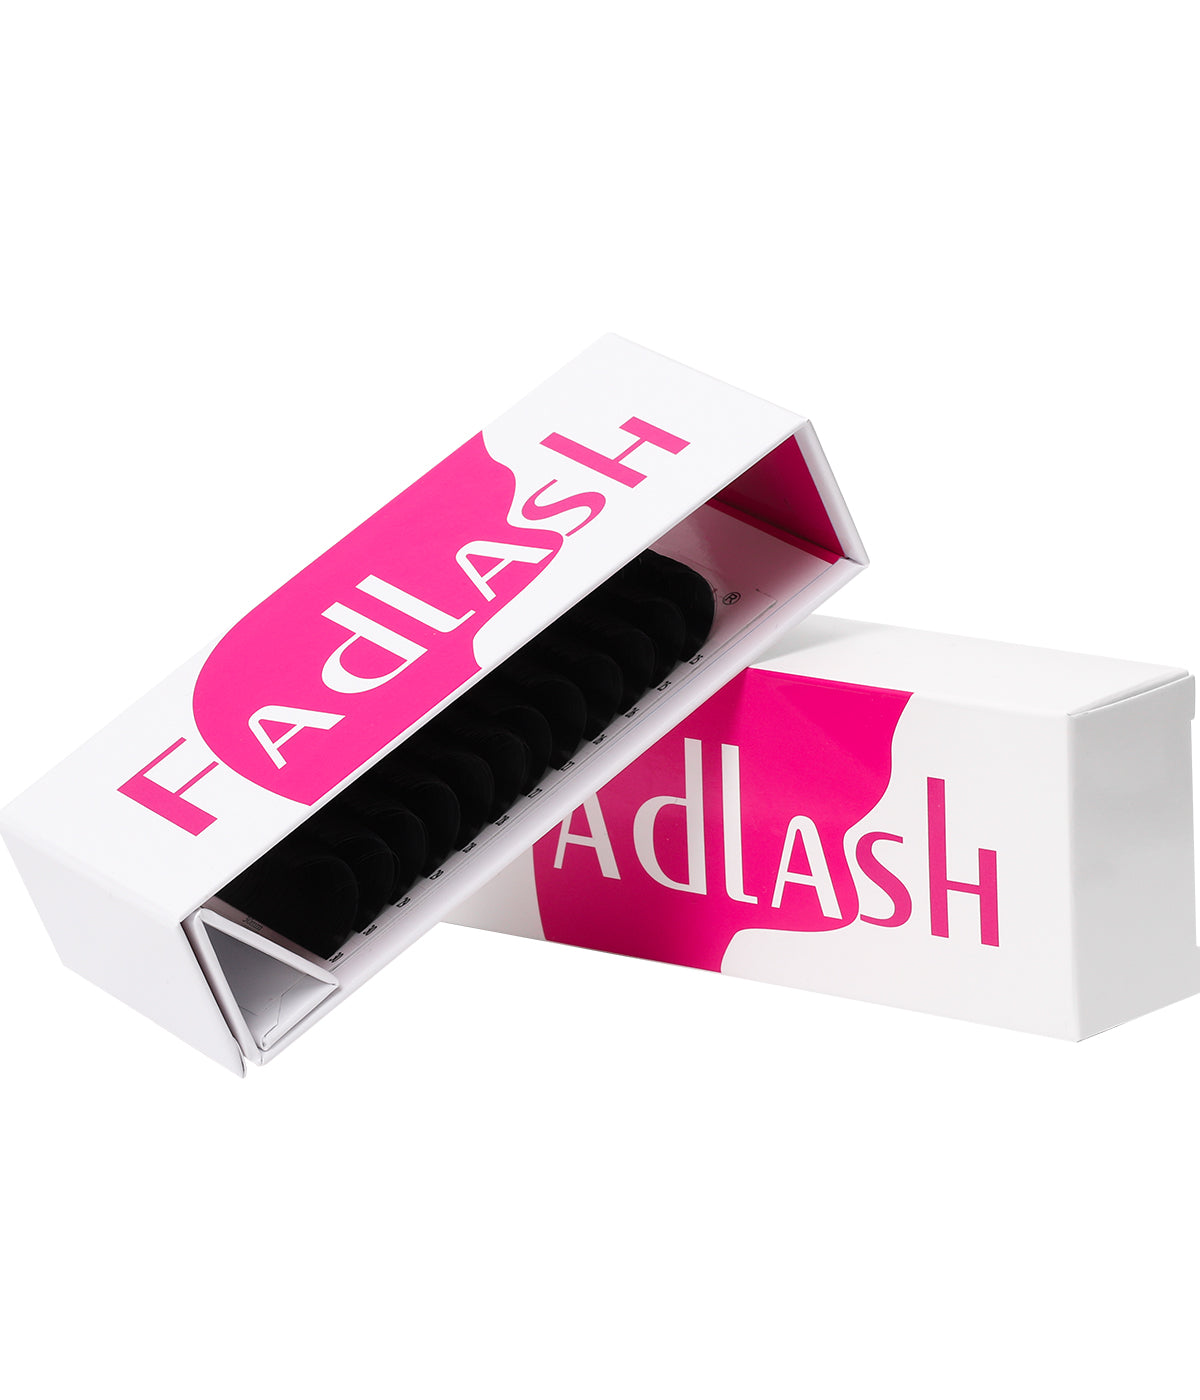 25-30mm Eyelash Extensions - Fadlash